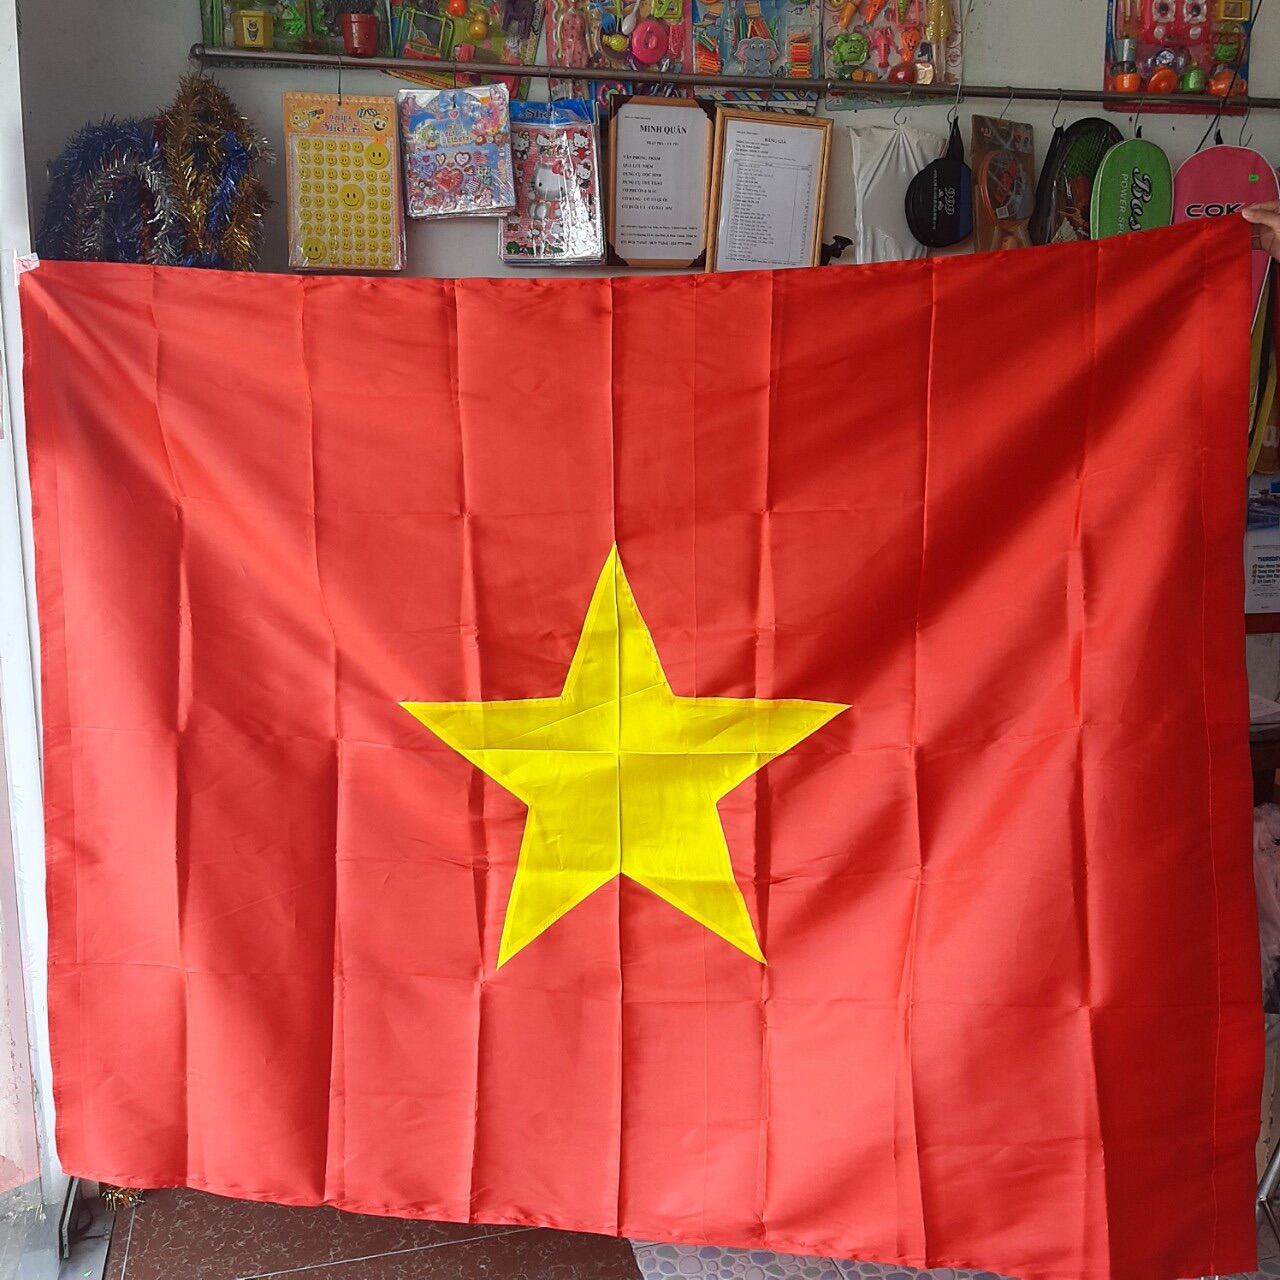 Cờ Đỏ Sao Vàng:
Chiếc cờ đỏ sao vàng là biểu tượng quốc gia của Việt Nam. Với sự thay đổi của lịch sử, cờ đỏ sao vàng đã biến đổi qua nhiều thời kỳ. Tuy nhiên, sức hút của cờ đỏ sao vàng vẫn được giữ nguyên trong lòng người dân Việt Nam. Nhấn vào hình ảnh để tận hưởng sắc đỏ sao vàng của chiếc cờ quốc kỳ đầy ý nghĩa này.